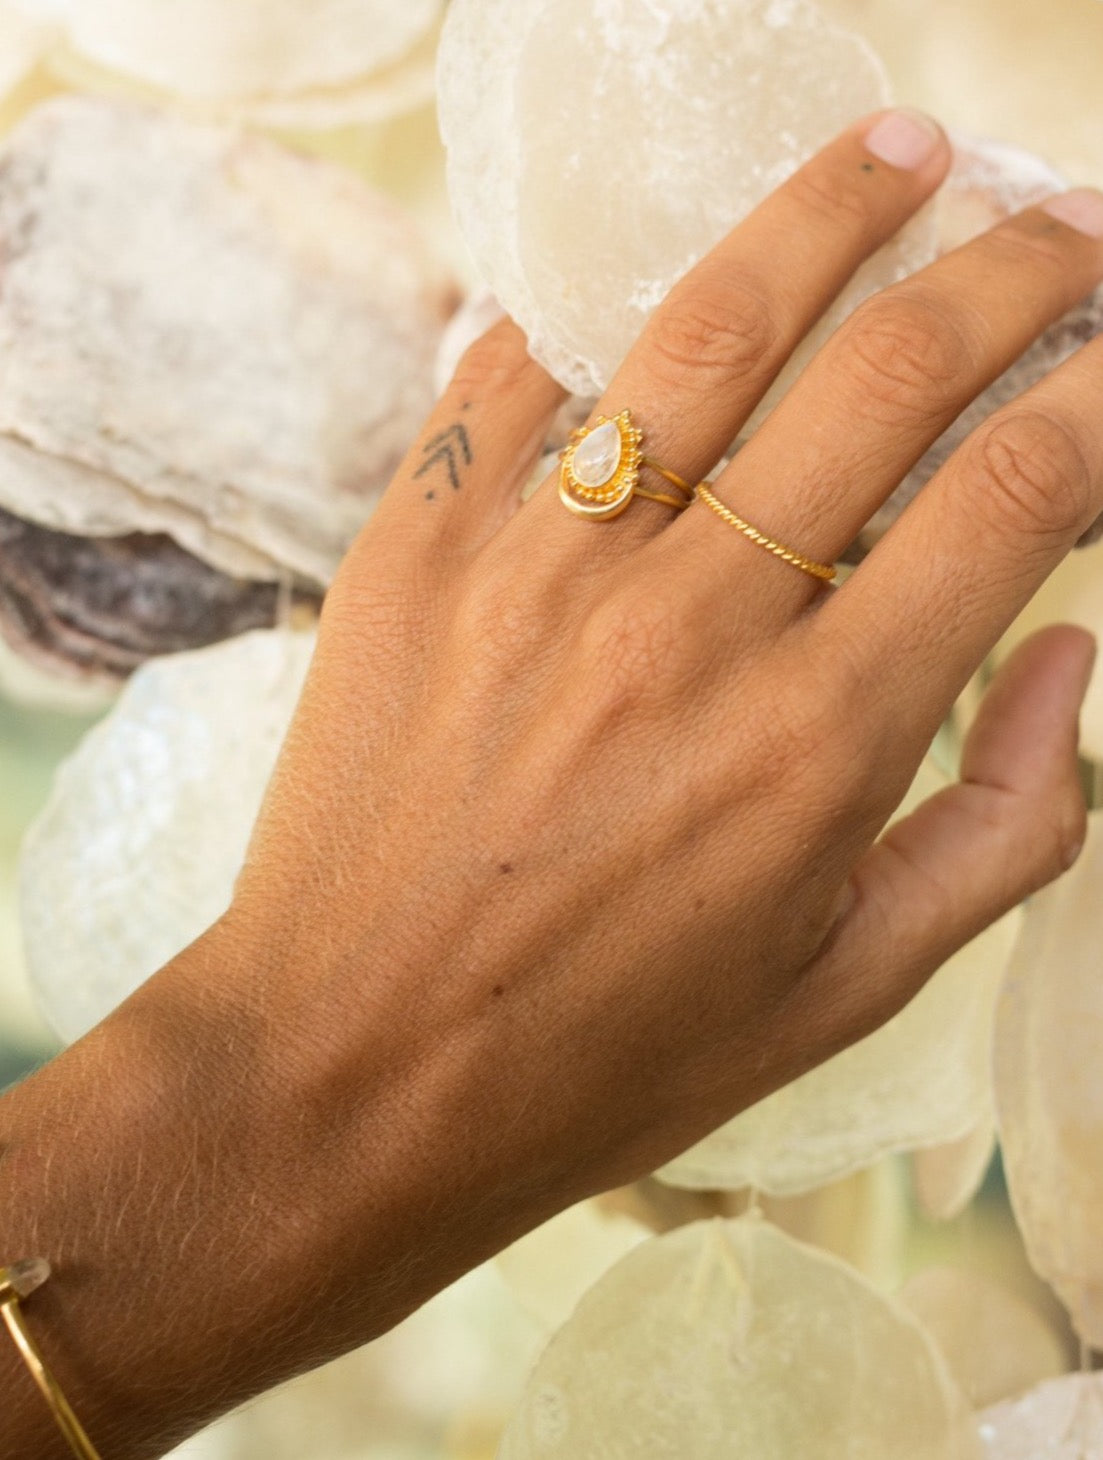 Handmade with love | VERLAN Jewellery | Fairfashion | Handgemachte Ringe im Boho Look aus Bali | Fair und nachhaltig handgefertigter Schmuck | Bali Tales | Sterlingsilber | Travel Feelings | Schlichter vergoldeter Ring